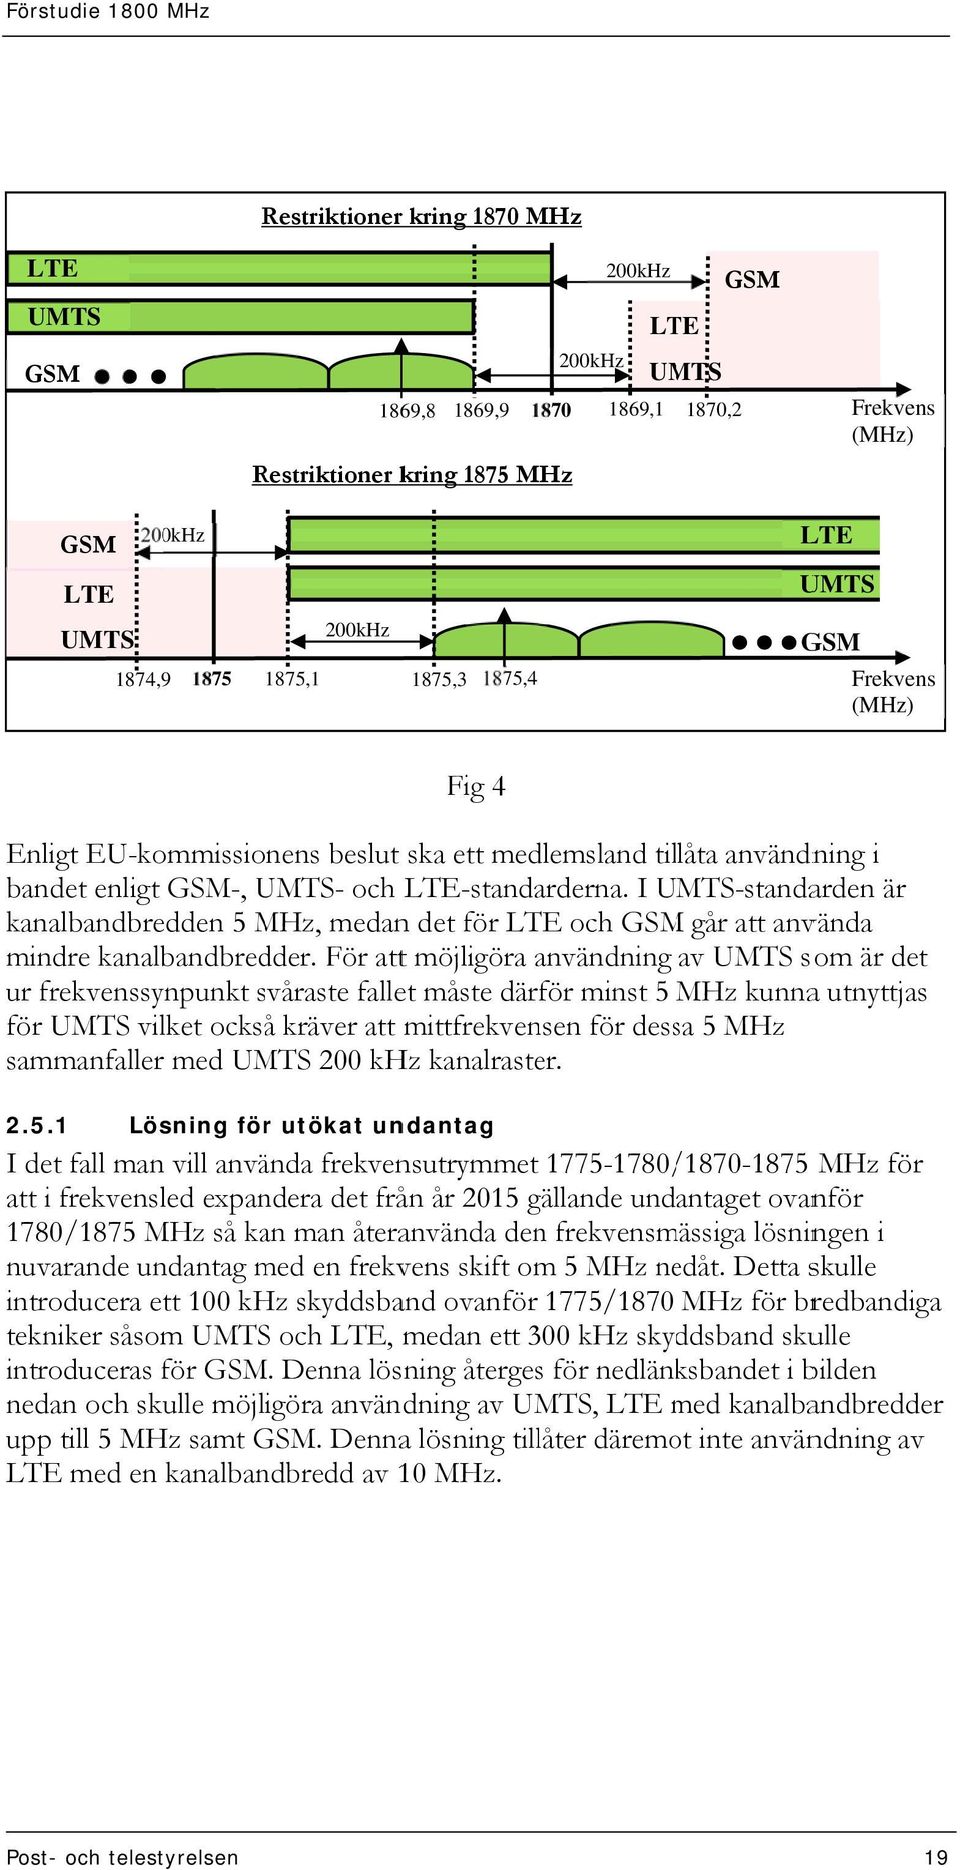 I UMTS-standarden är kanalbandbredden 5 MHz, medann det för LTE och GSM går att använda mindre kanalbandbredder.